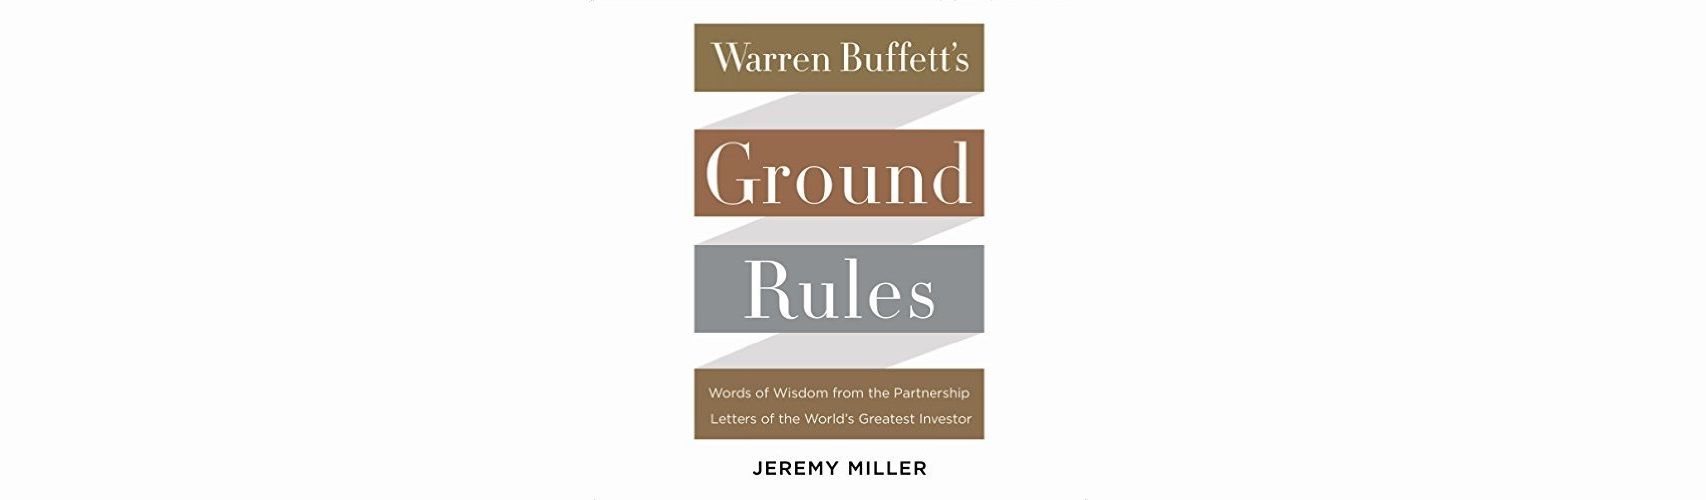 Book Review: Warren Buffett's Ground Rules